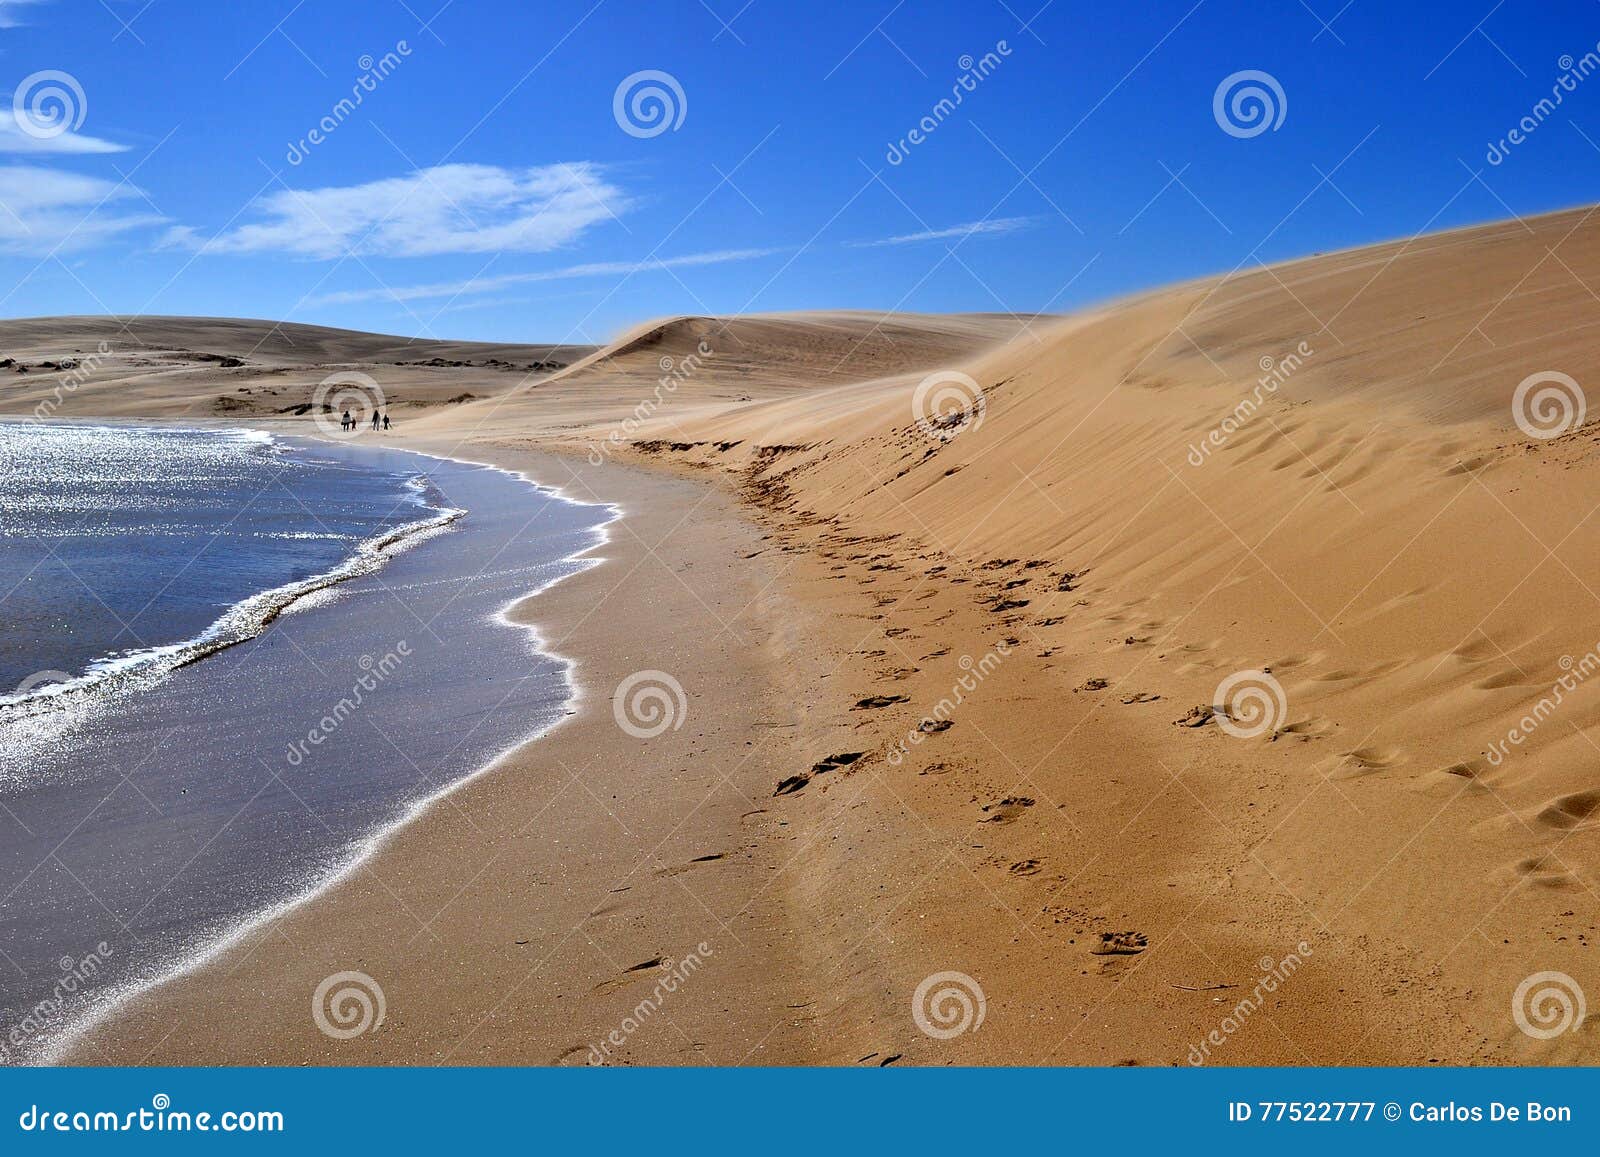 dunes of valizas